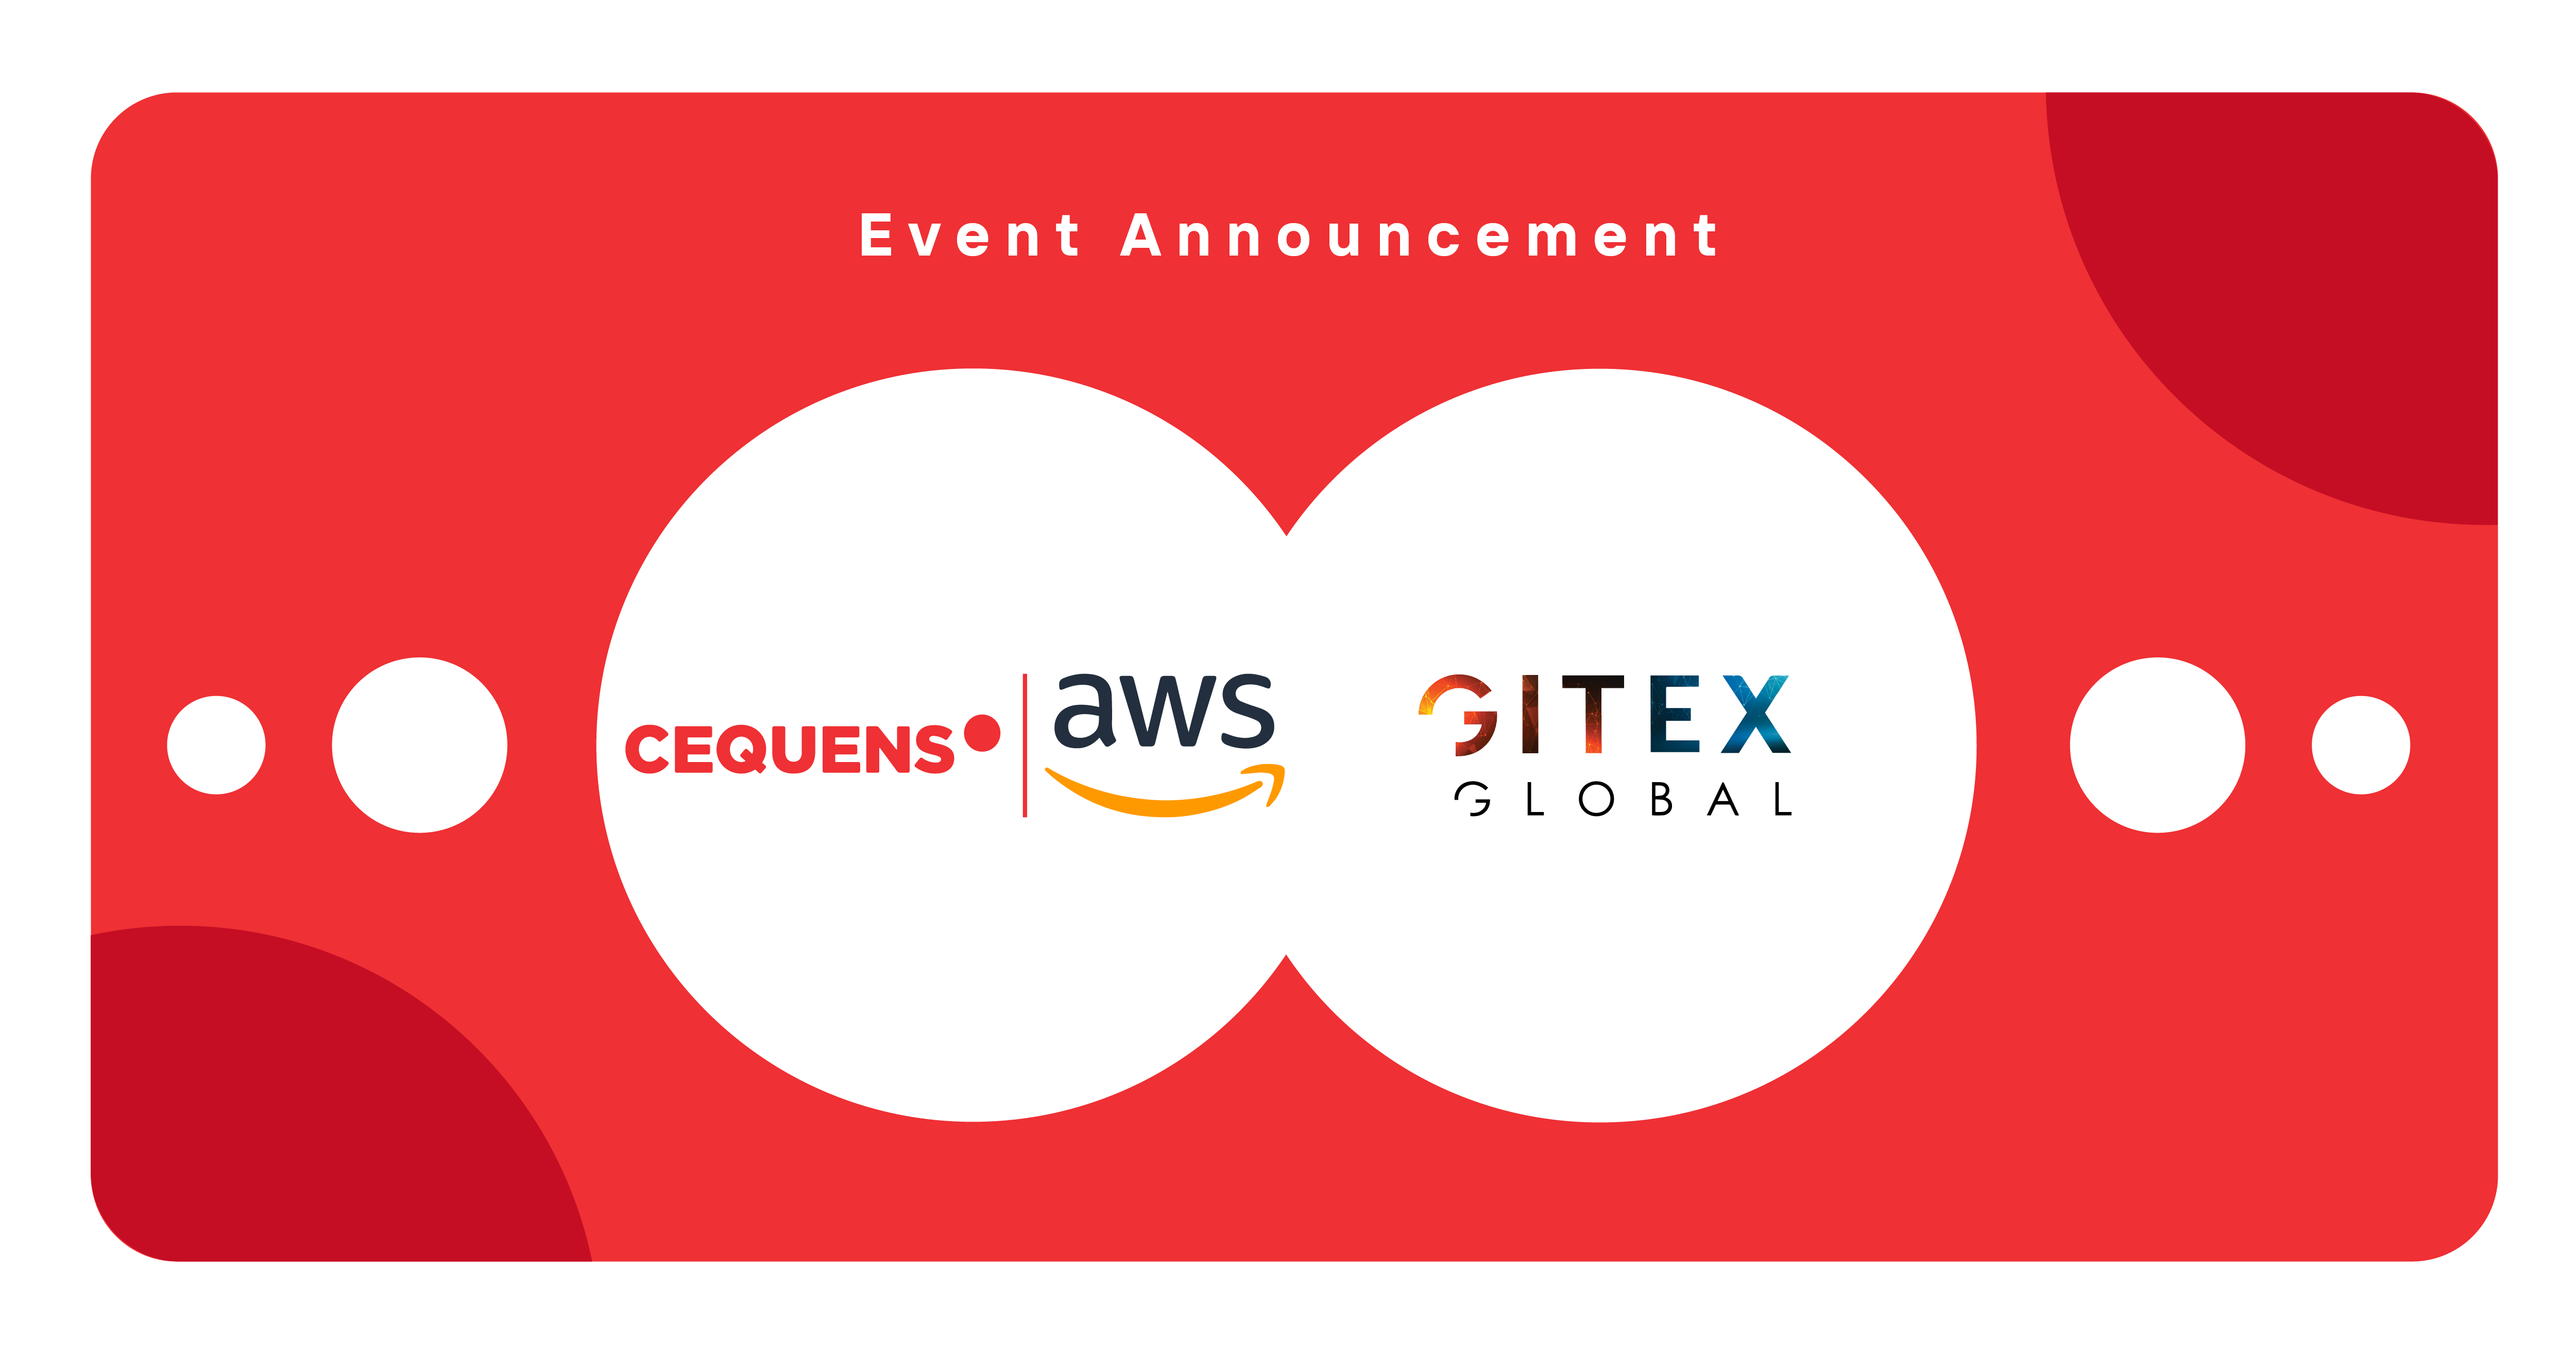 Brand logos for CEQUENS, AWS, and GITEX